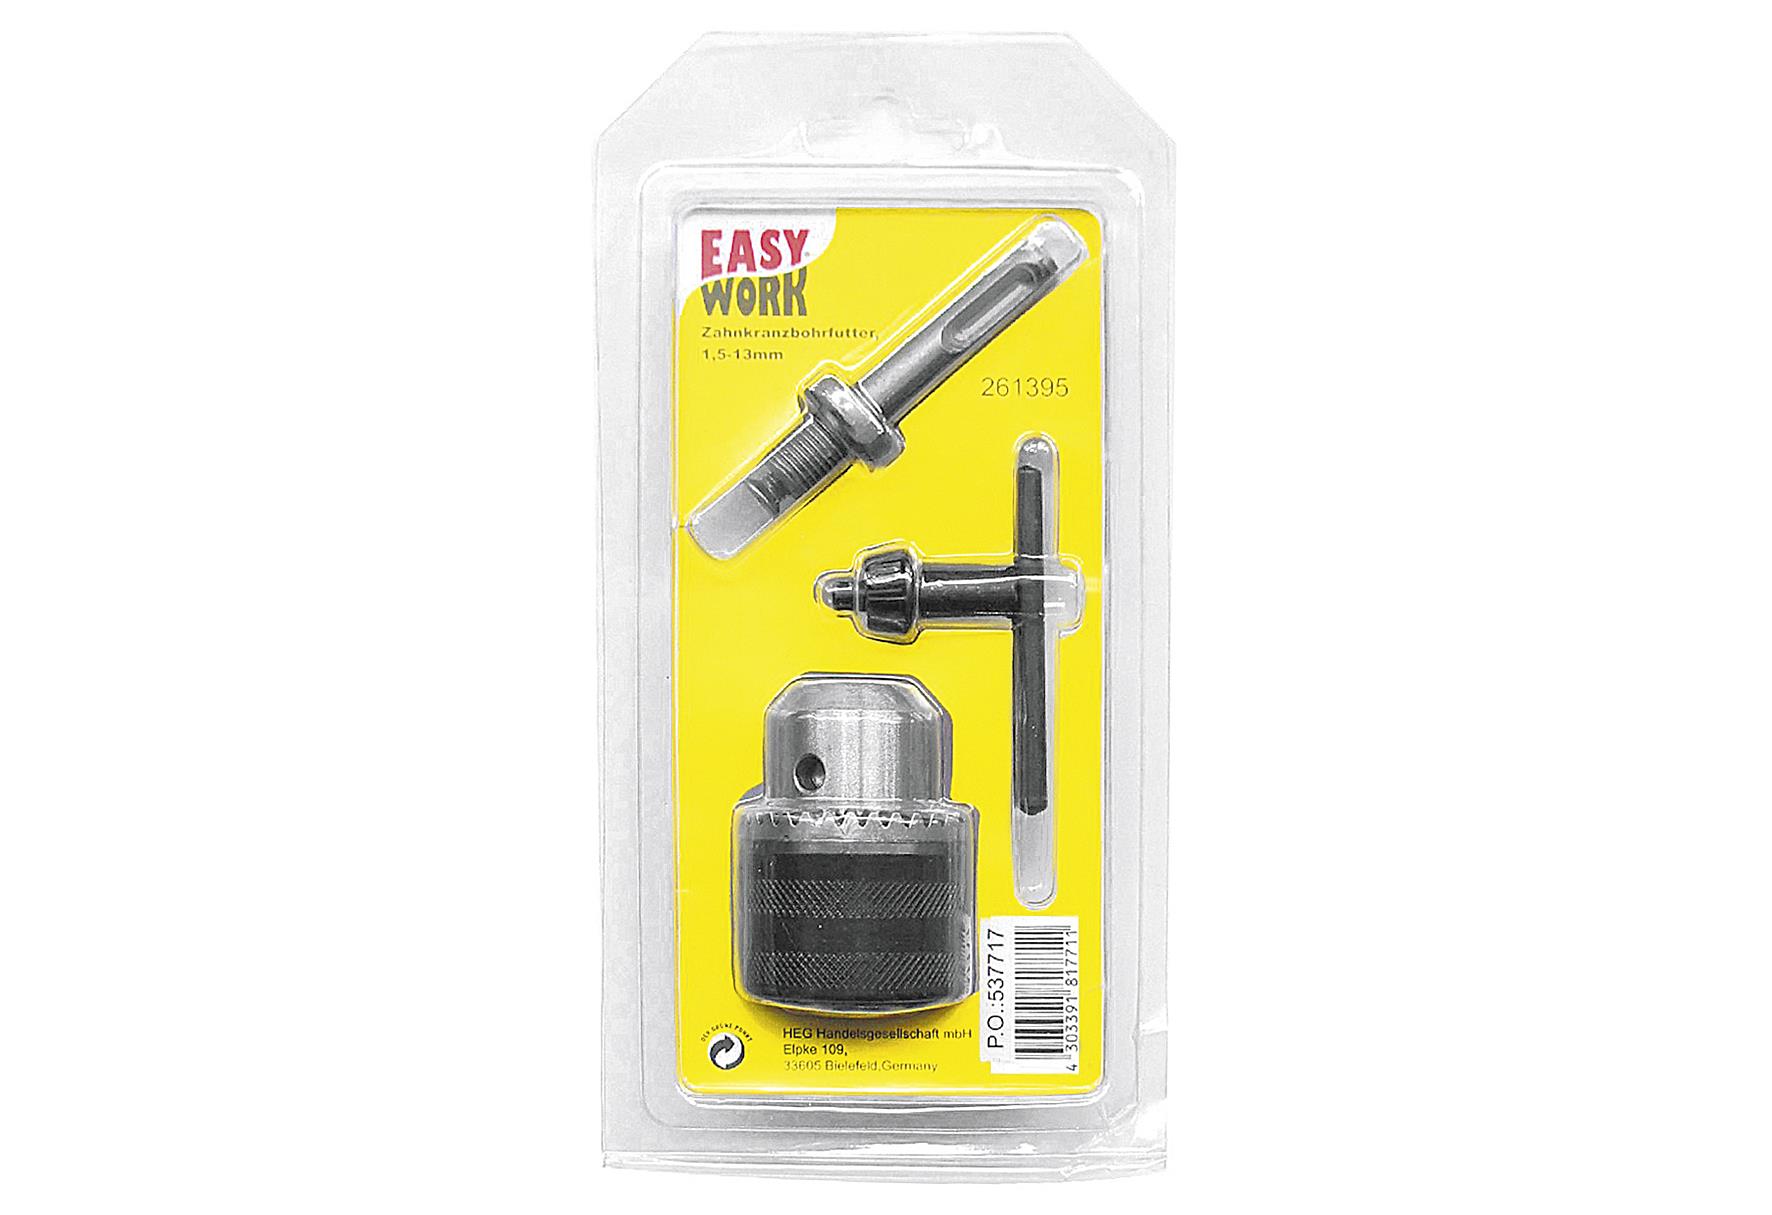 EASY WORK Zahnkranzbohrfutter 1,5 - 13 mm mit SDS Adapter